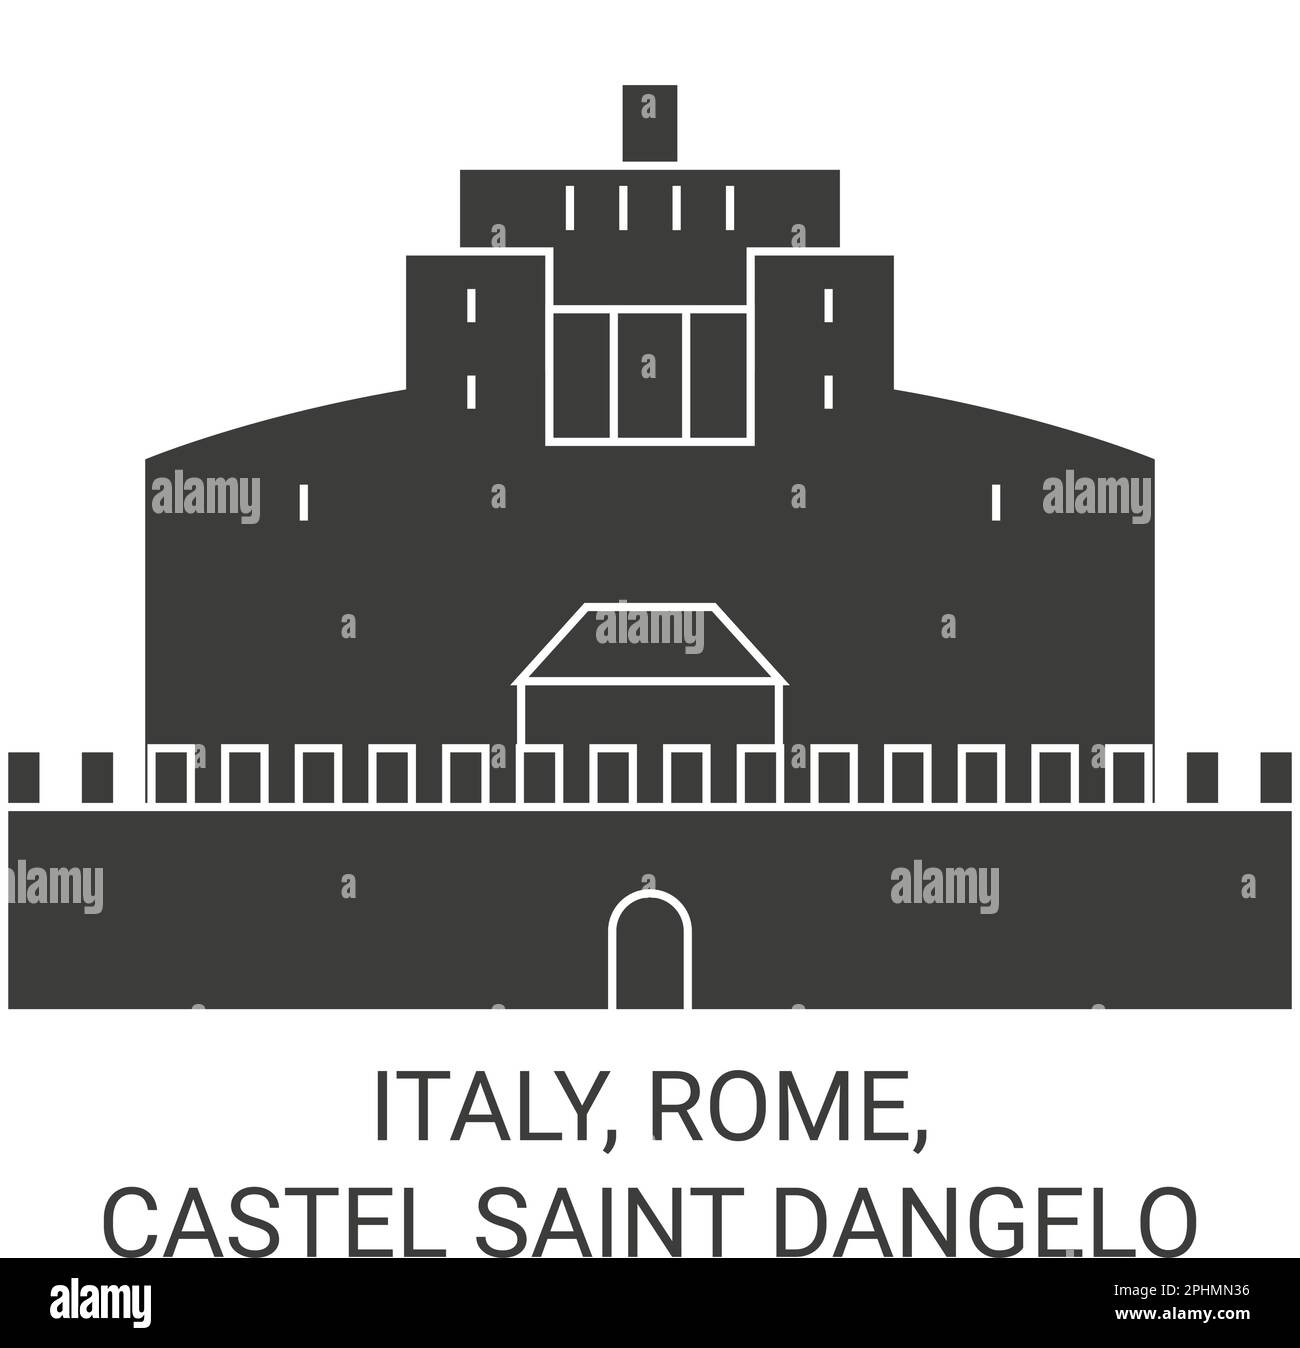 Italien, Rom, Castel Saint Dangelo Reise Wahrzeichen Vektordarstellung Stock Vektor